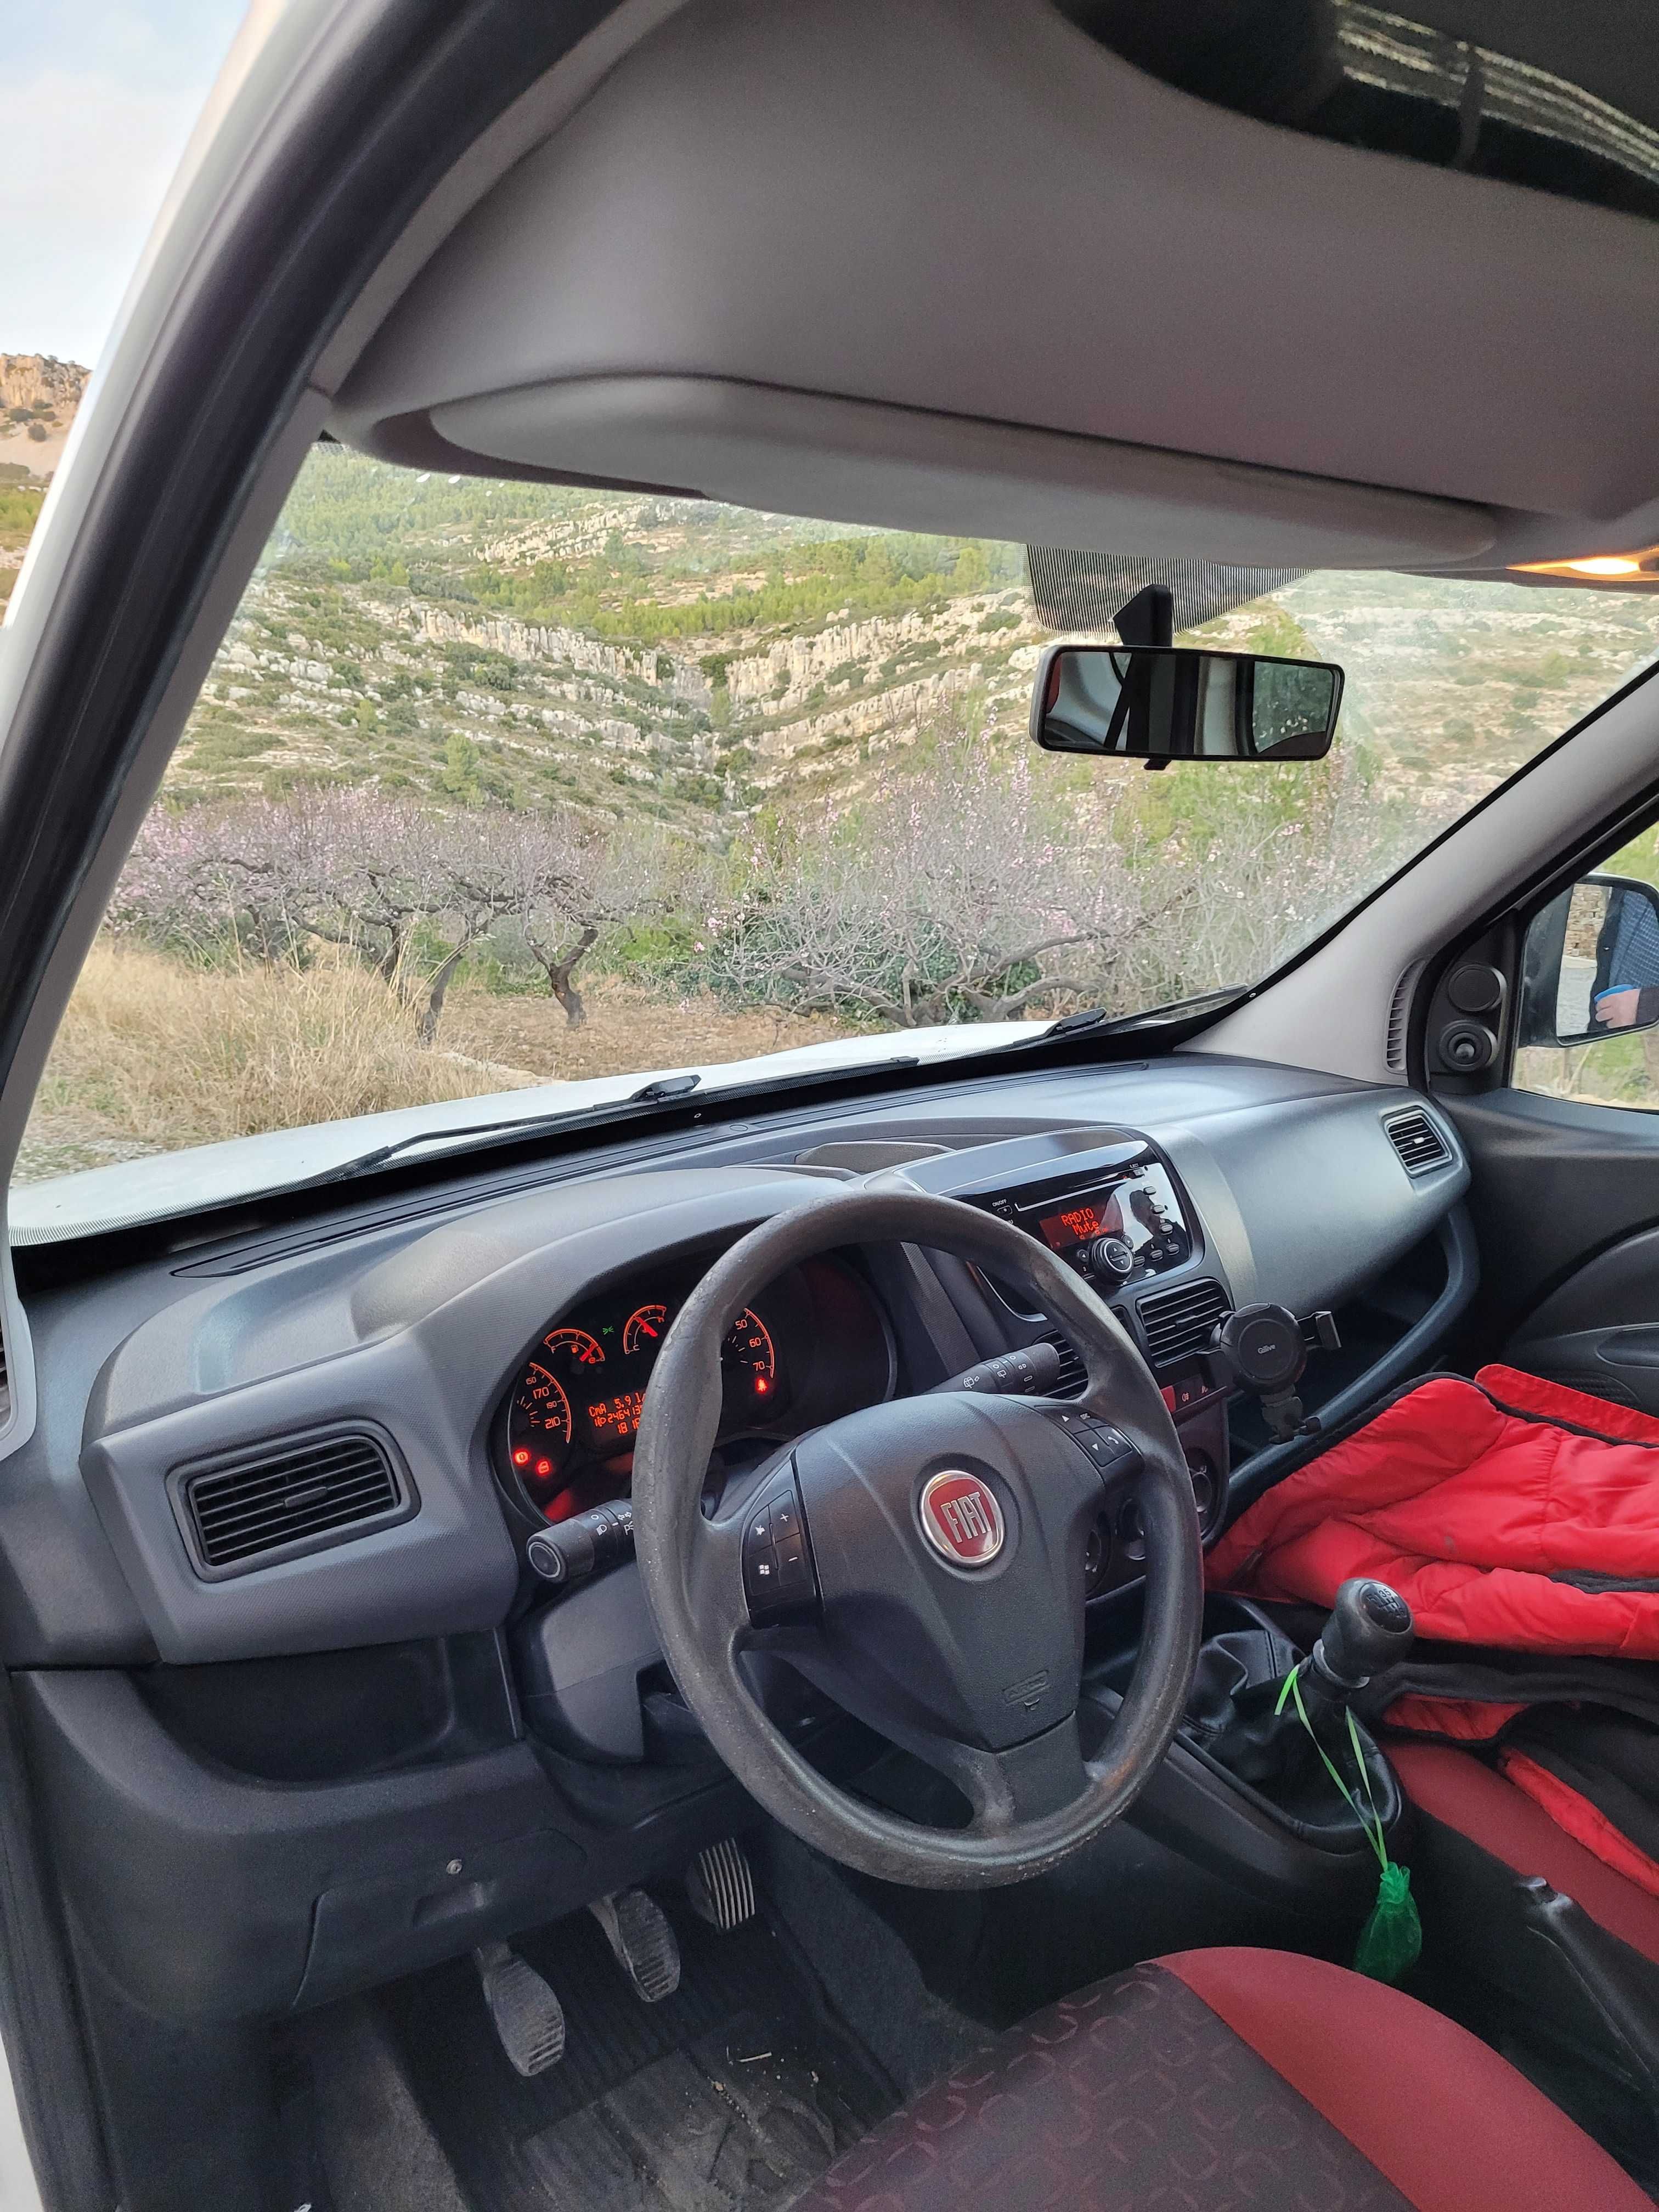 Fiat Doblo Panorama 1.6mjtd